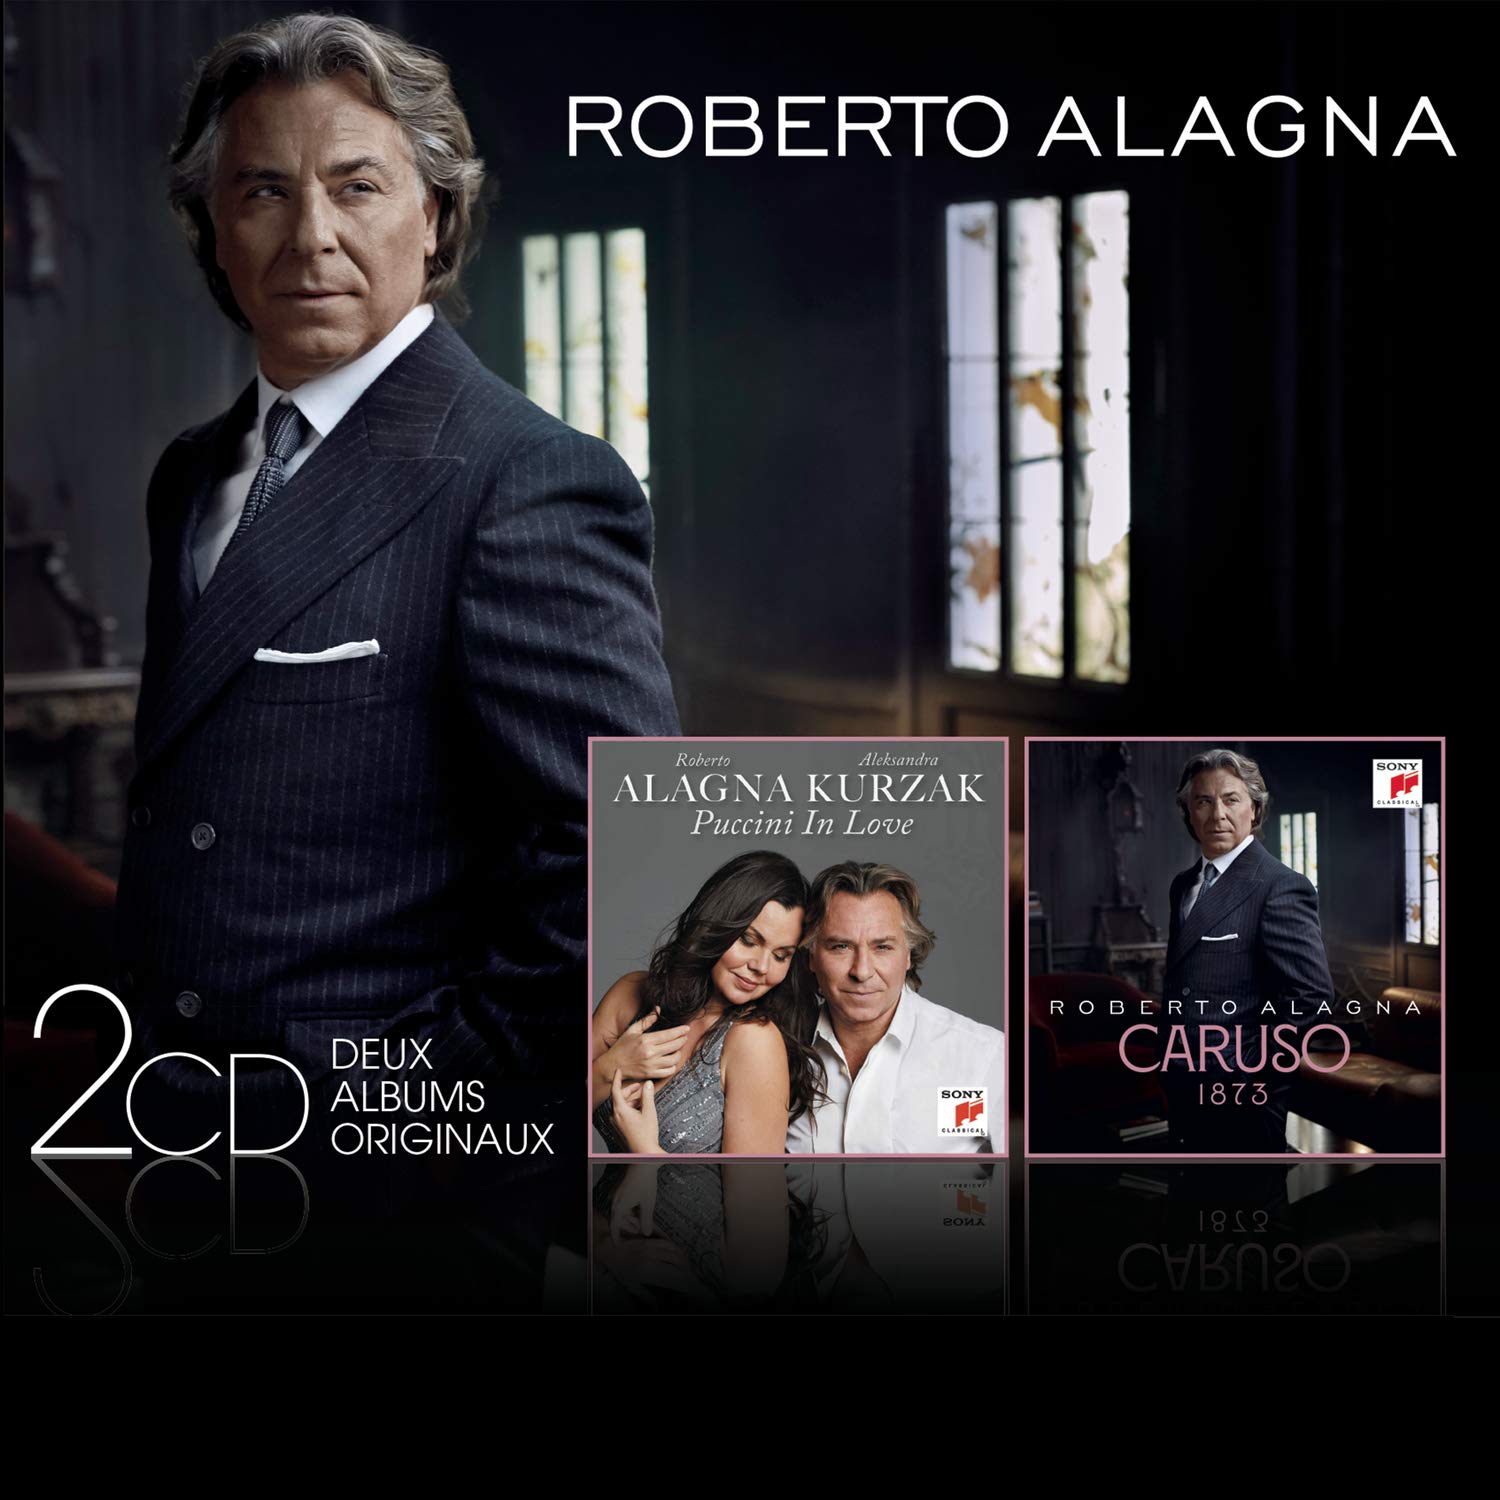 Love　Roberto　Magazin　(CD)　MUSICON　in　Alagna　Puccini　Muzică　Caruso　de